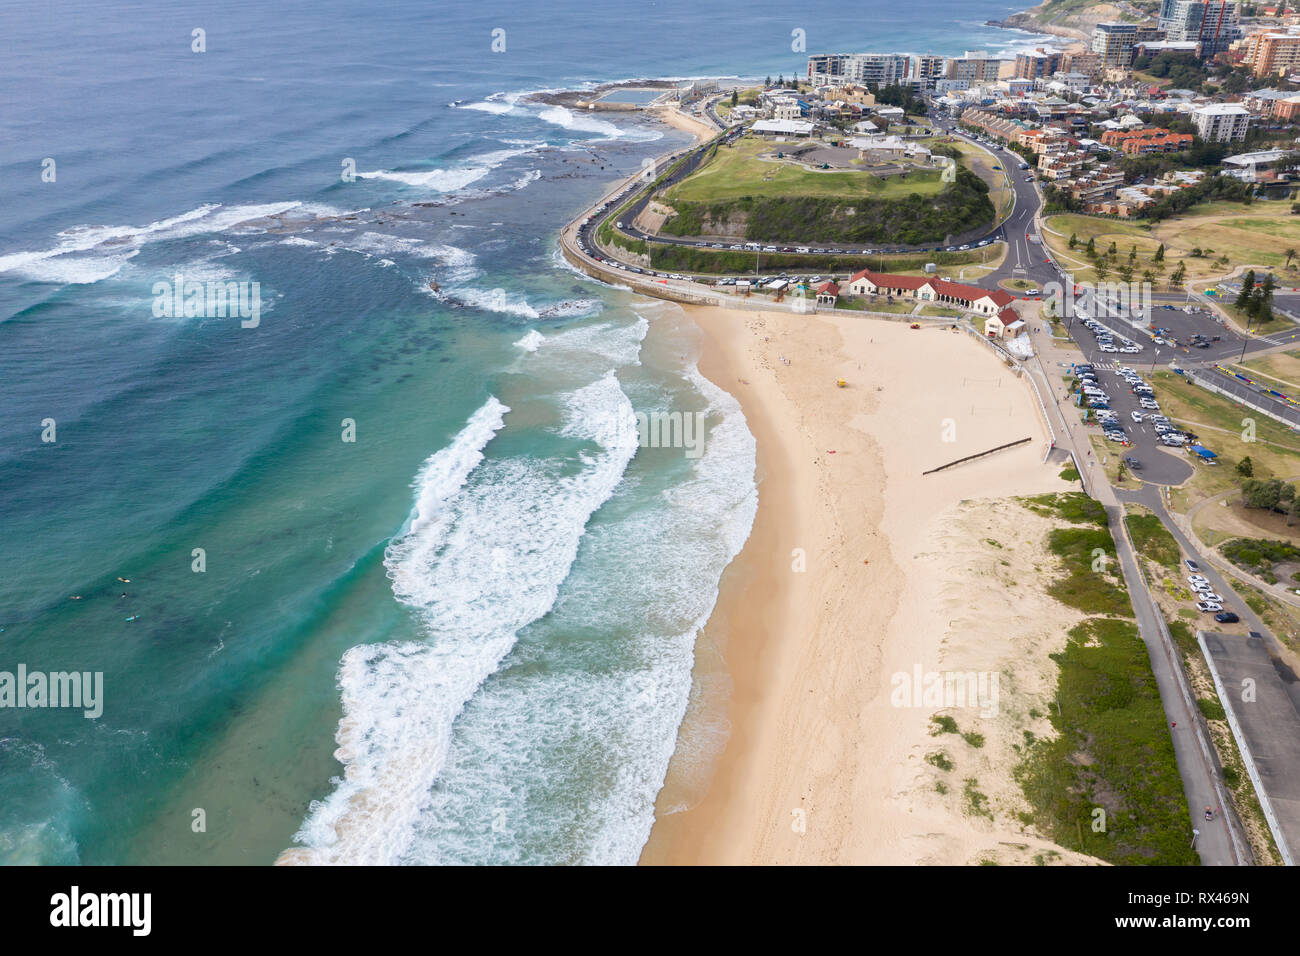 Vista aerea della spiaggia Nobbys - Newcastle Australia. Nobbys beach è uno di Newcastle più famose spiagge. Newcastle - NSW Australia Foto Stock